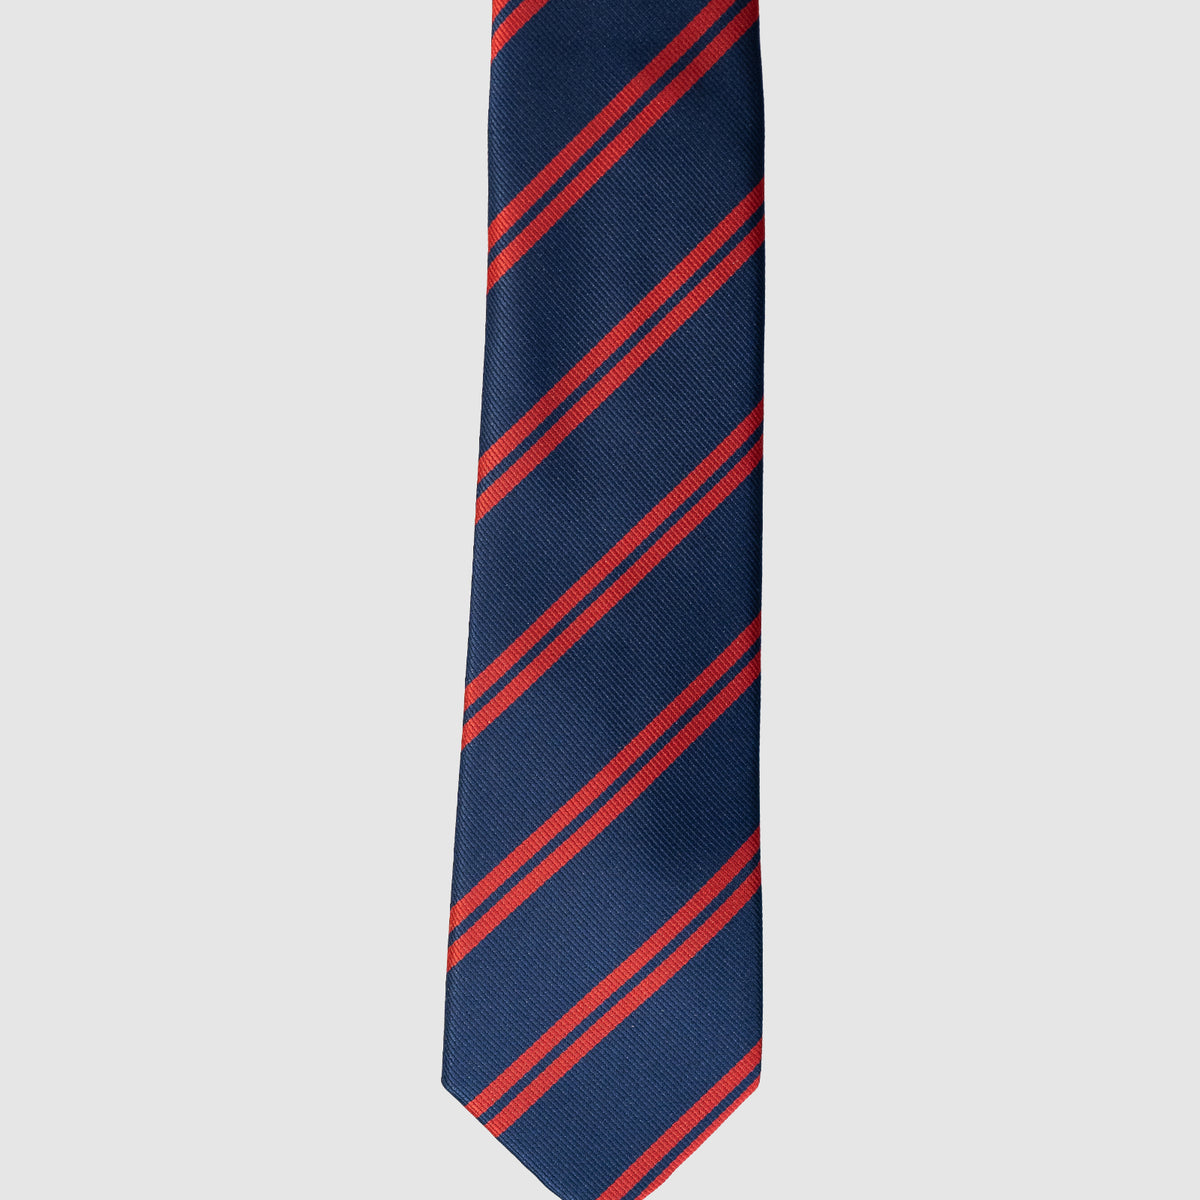 Stripe Navy & Red Necktie